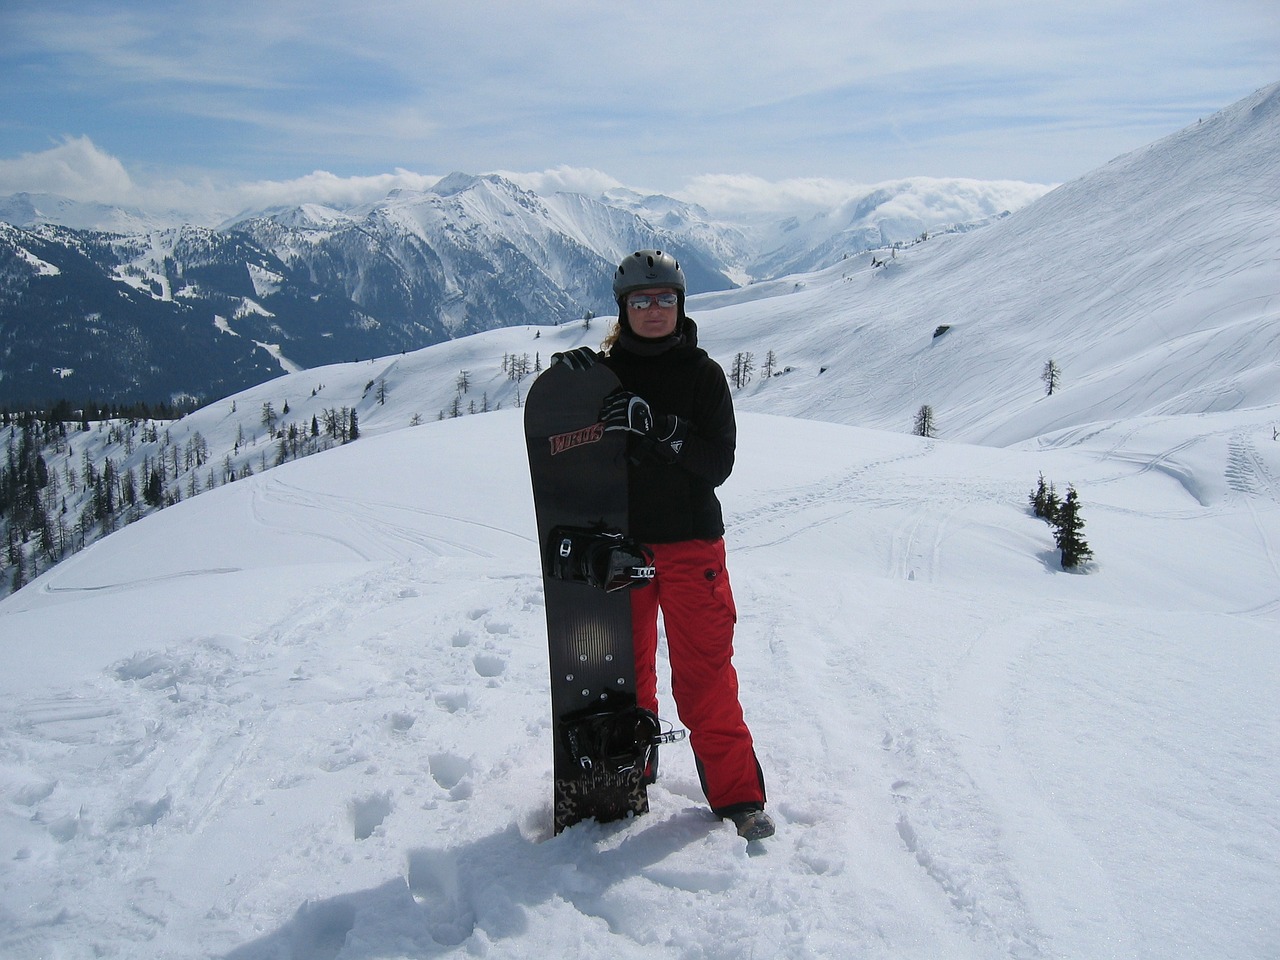 semolina kar corner wagrain snowboard free photo